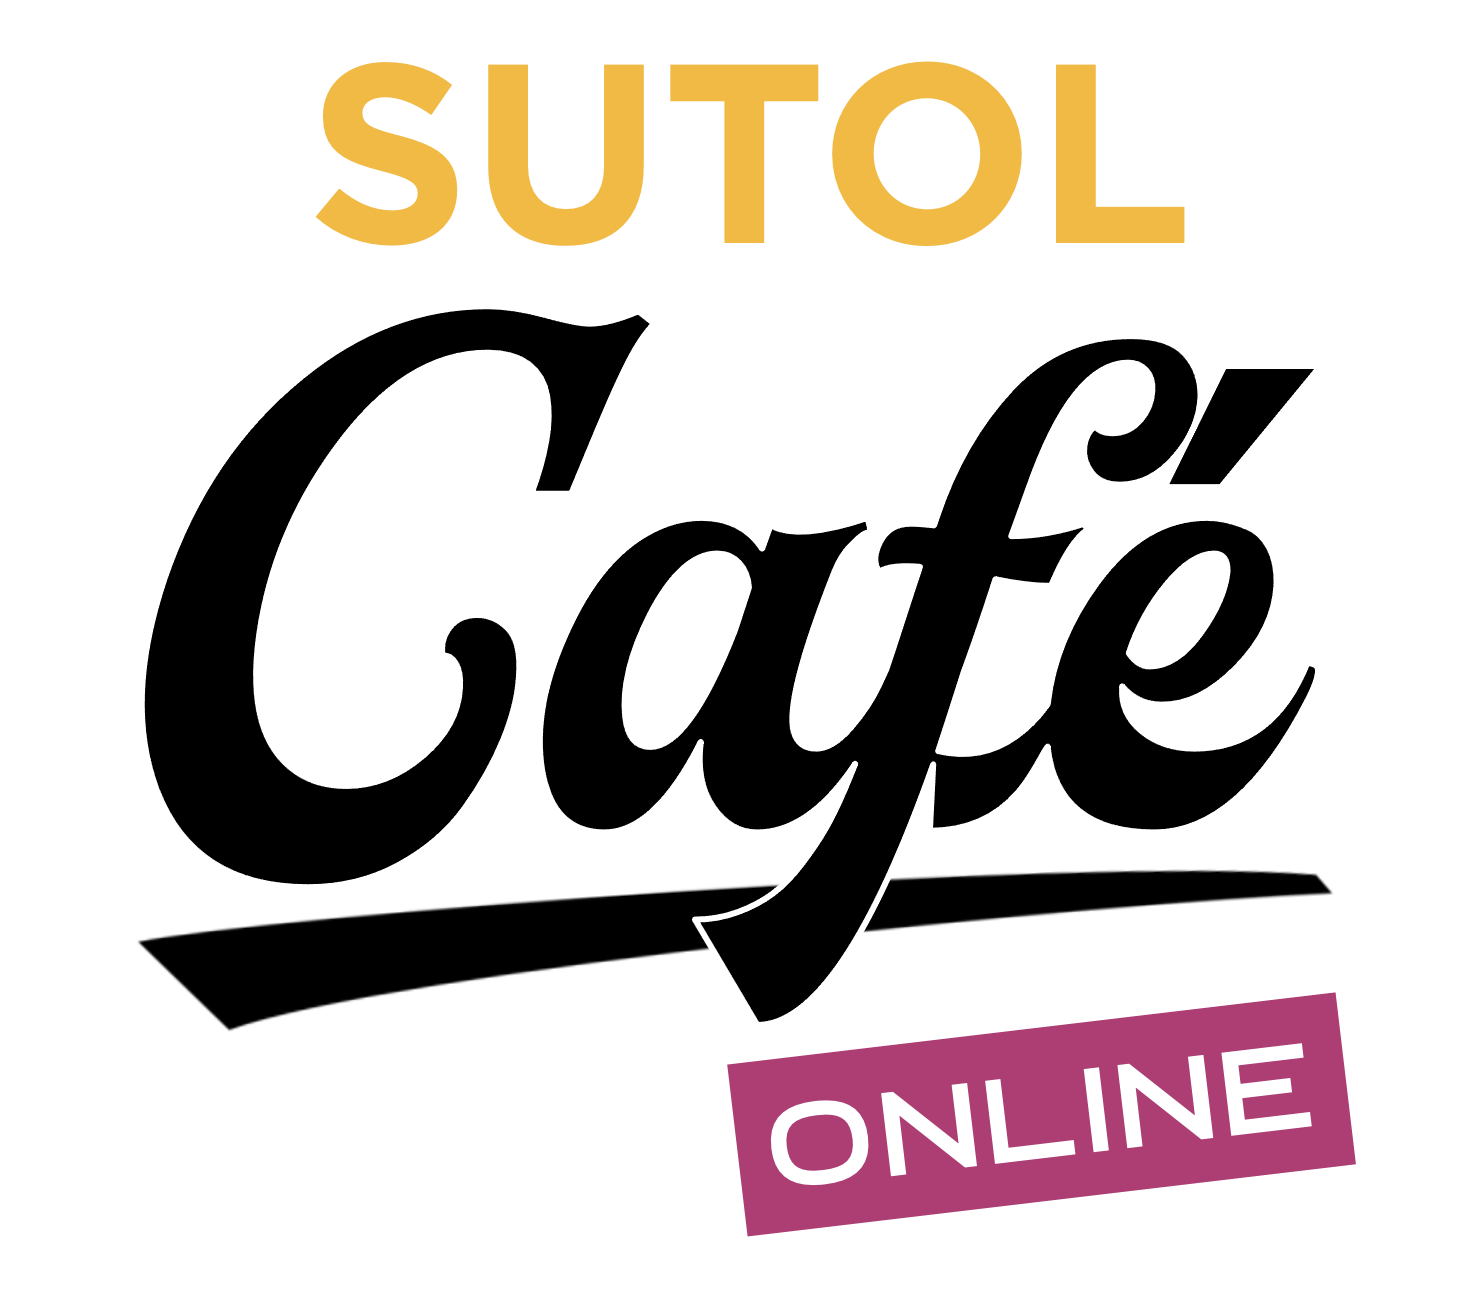 SUTOL Cafe logo